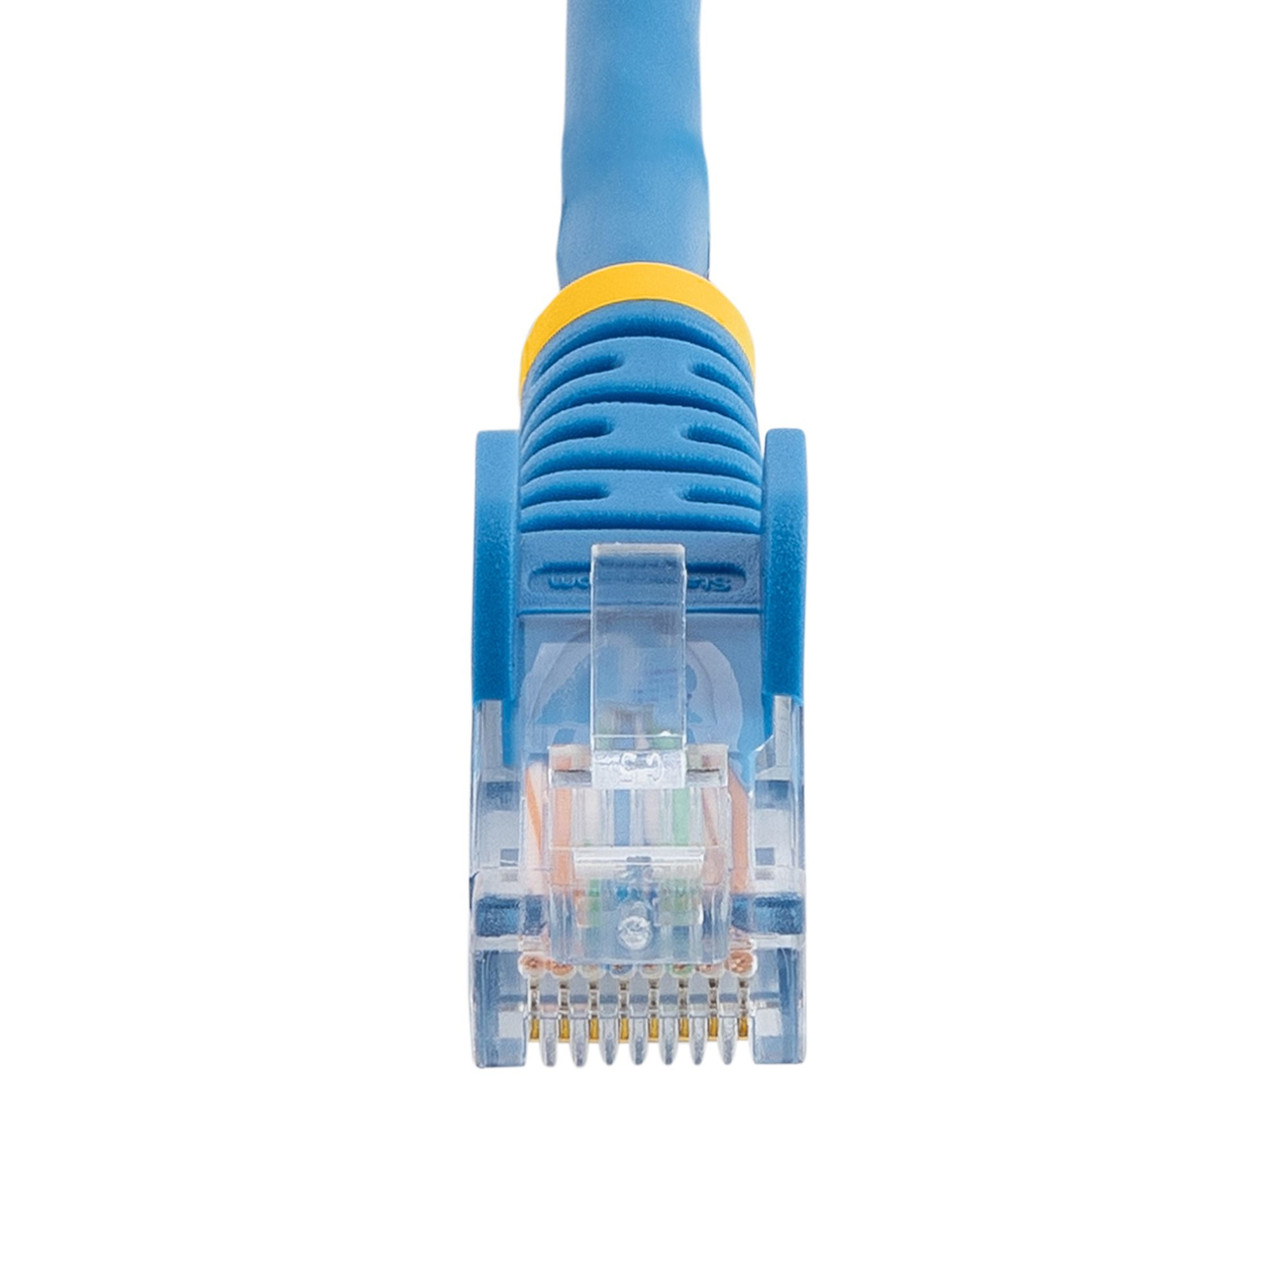 StarTech.com Cat5e Ethernet Patch Cable with Snagless RJ45 Connectors - 10 m, Blue